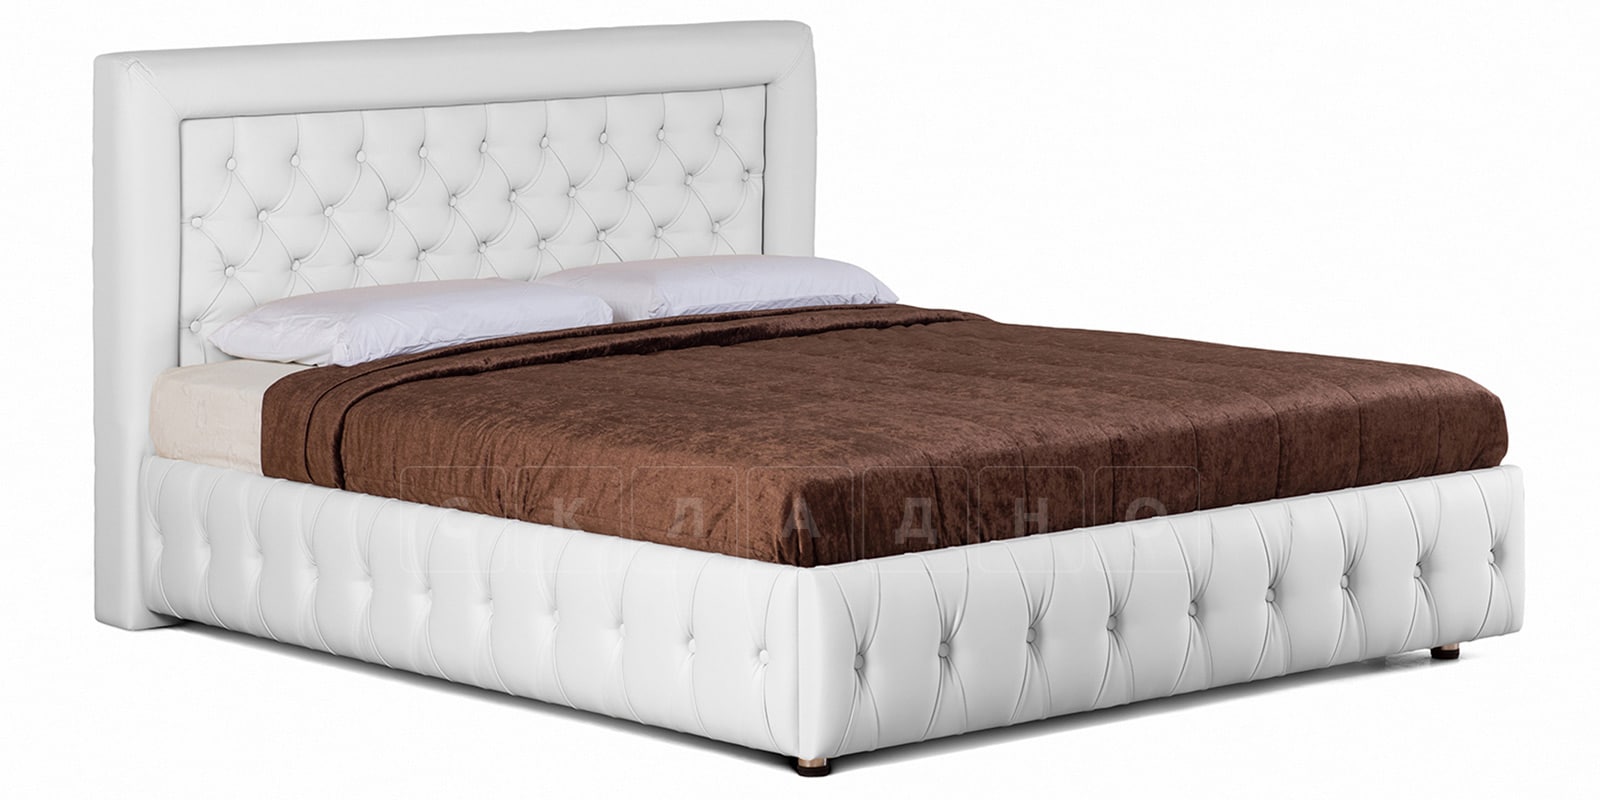 Мягкая кровать Малибу 160см экокожа белого цвета вариант 7-2 фото 1 | интернет-магазин Складно